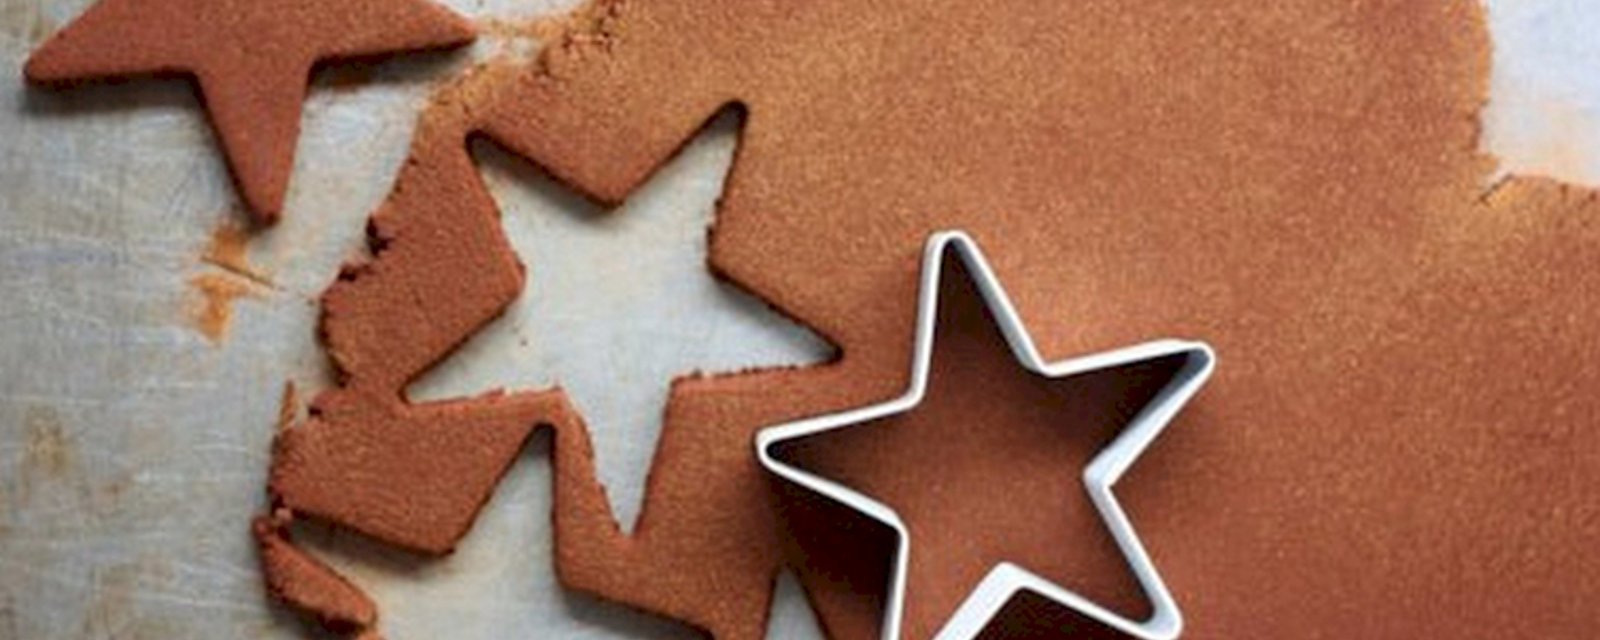 15 décorations de Noël faciles à fabriquer qui vous mettront dans l'esprit des Fêtes! 